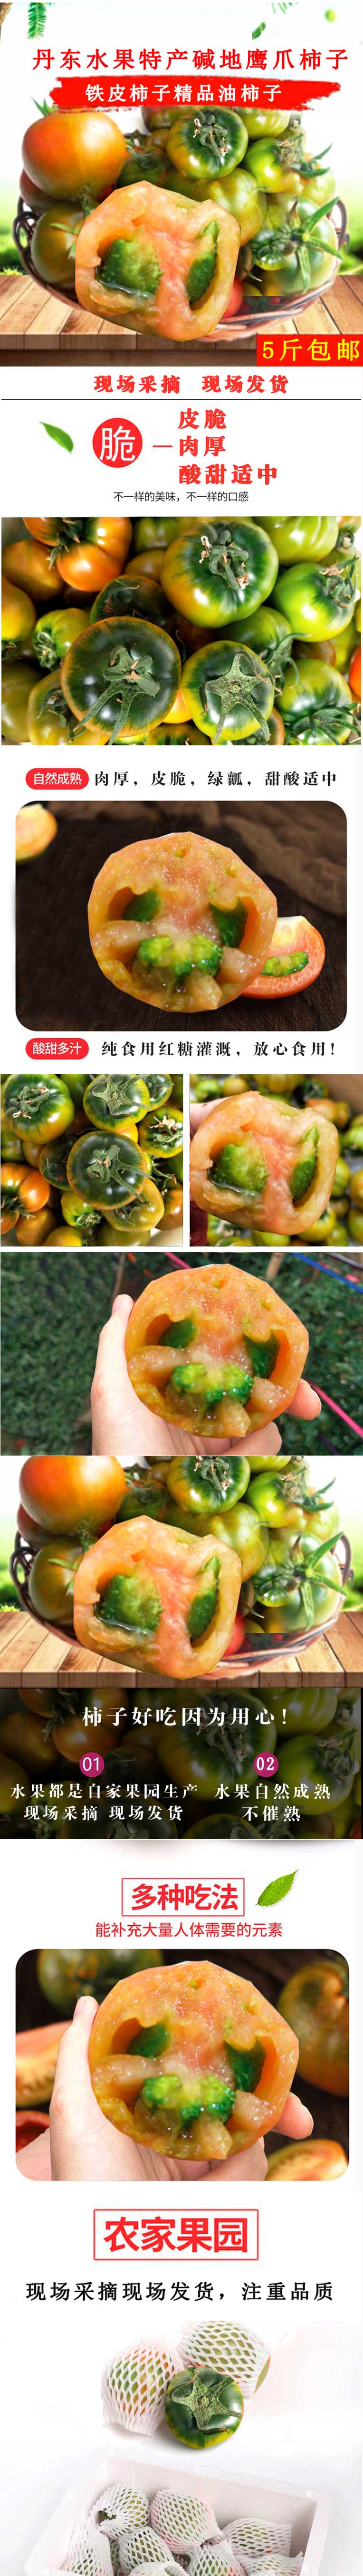 新品柿子详情页-美食特产-有机食品-新鲜蔬果